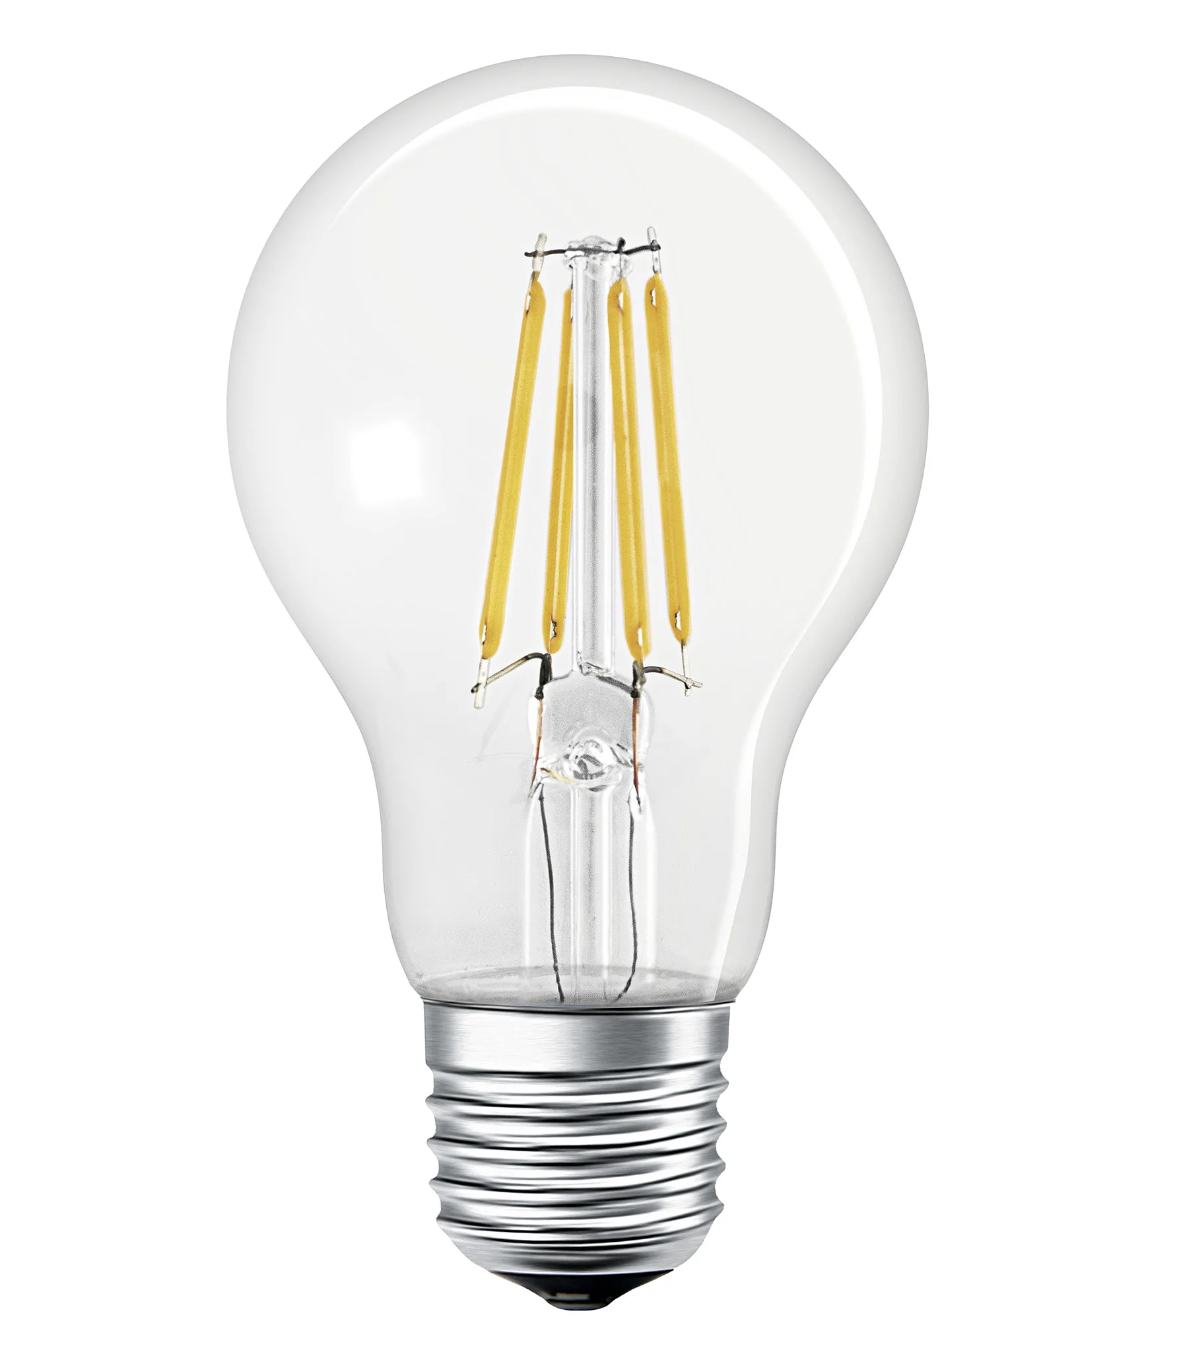 Ampoule LED E27 Retrofit dimmable 12 W = 1521 lumens blanc froid